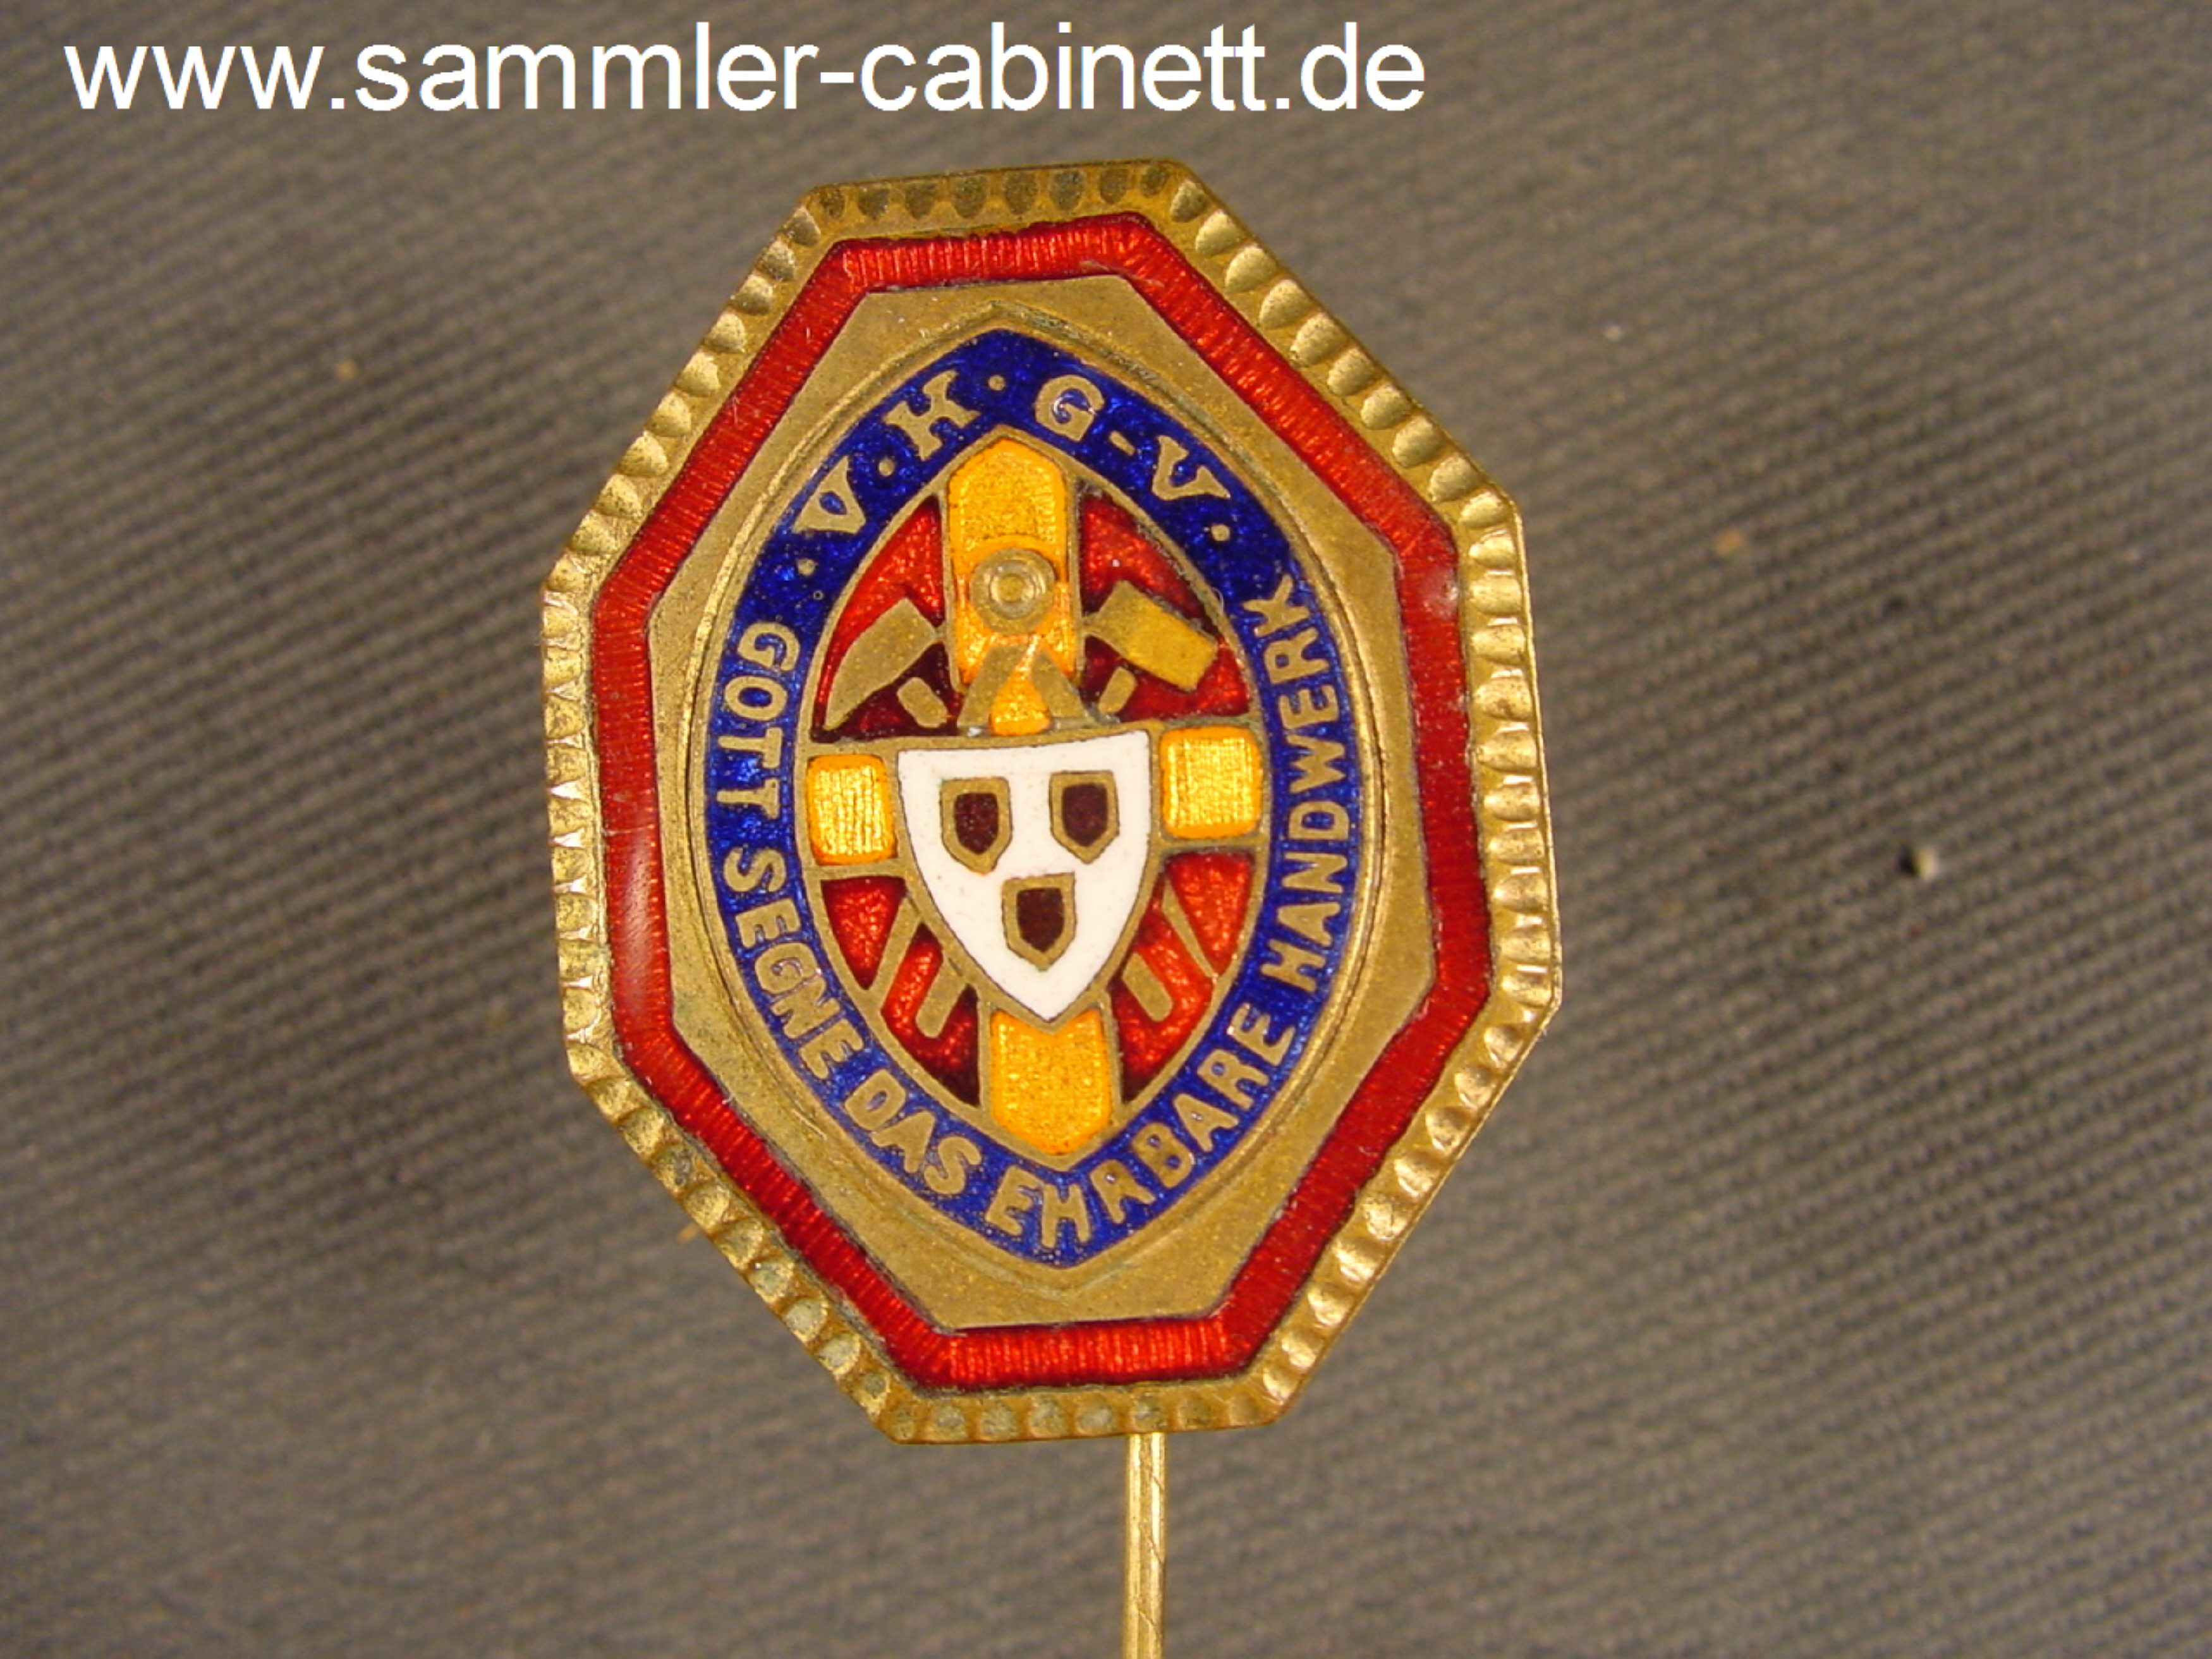 Nr.-9421e - Verband katholischer Gesellenvereine -...